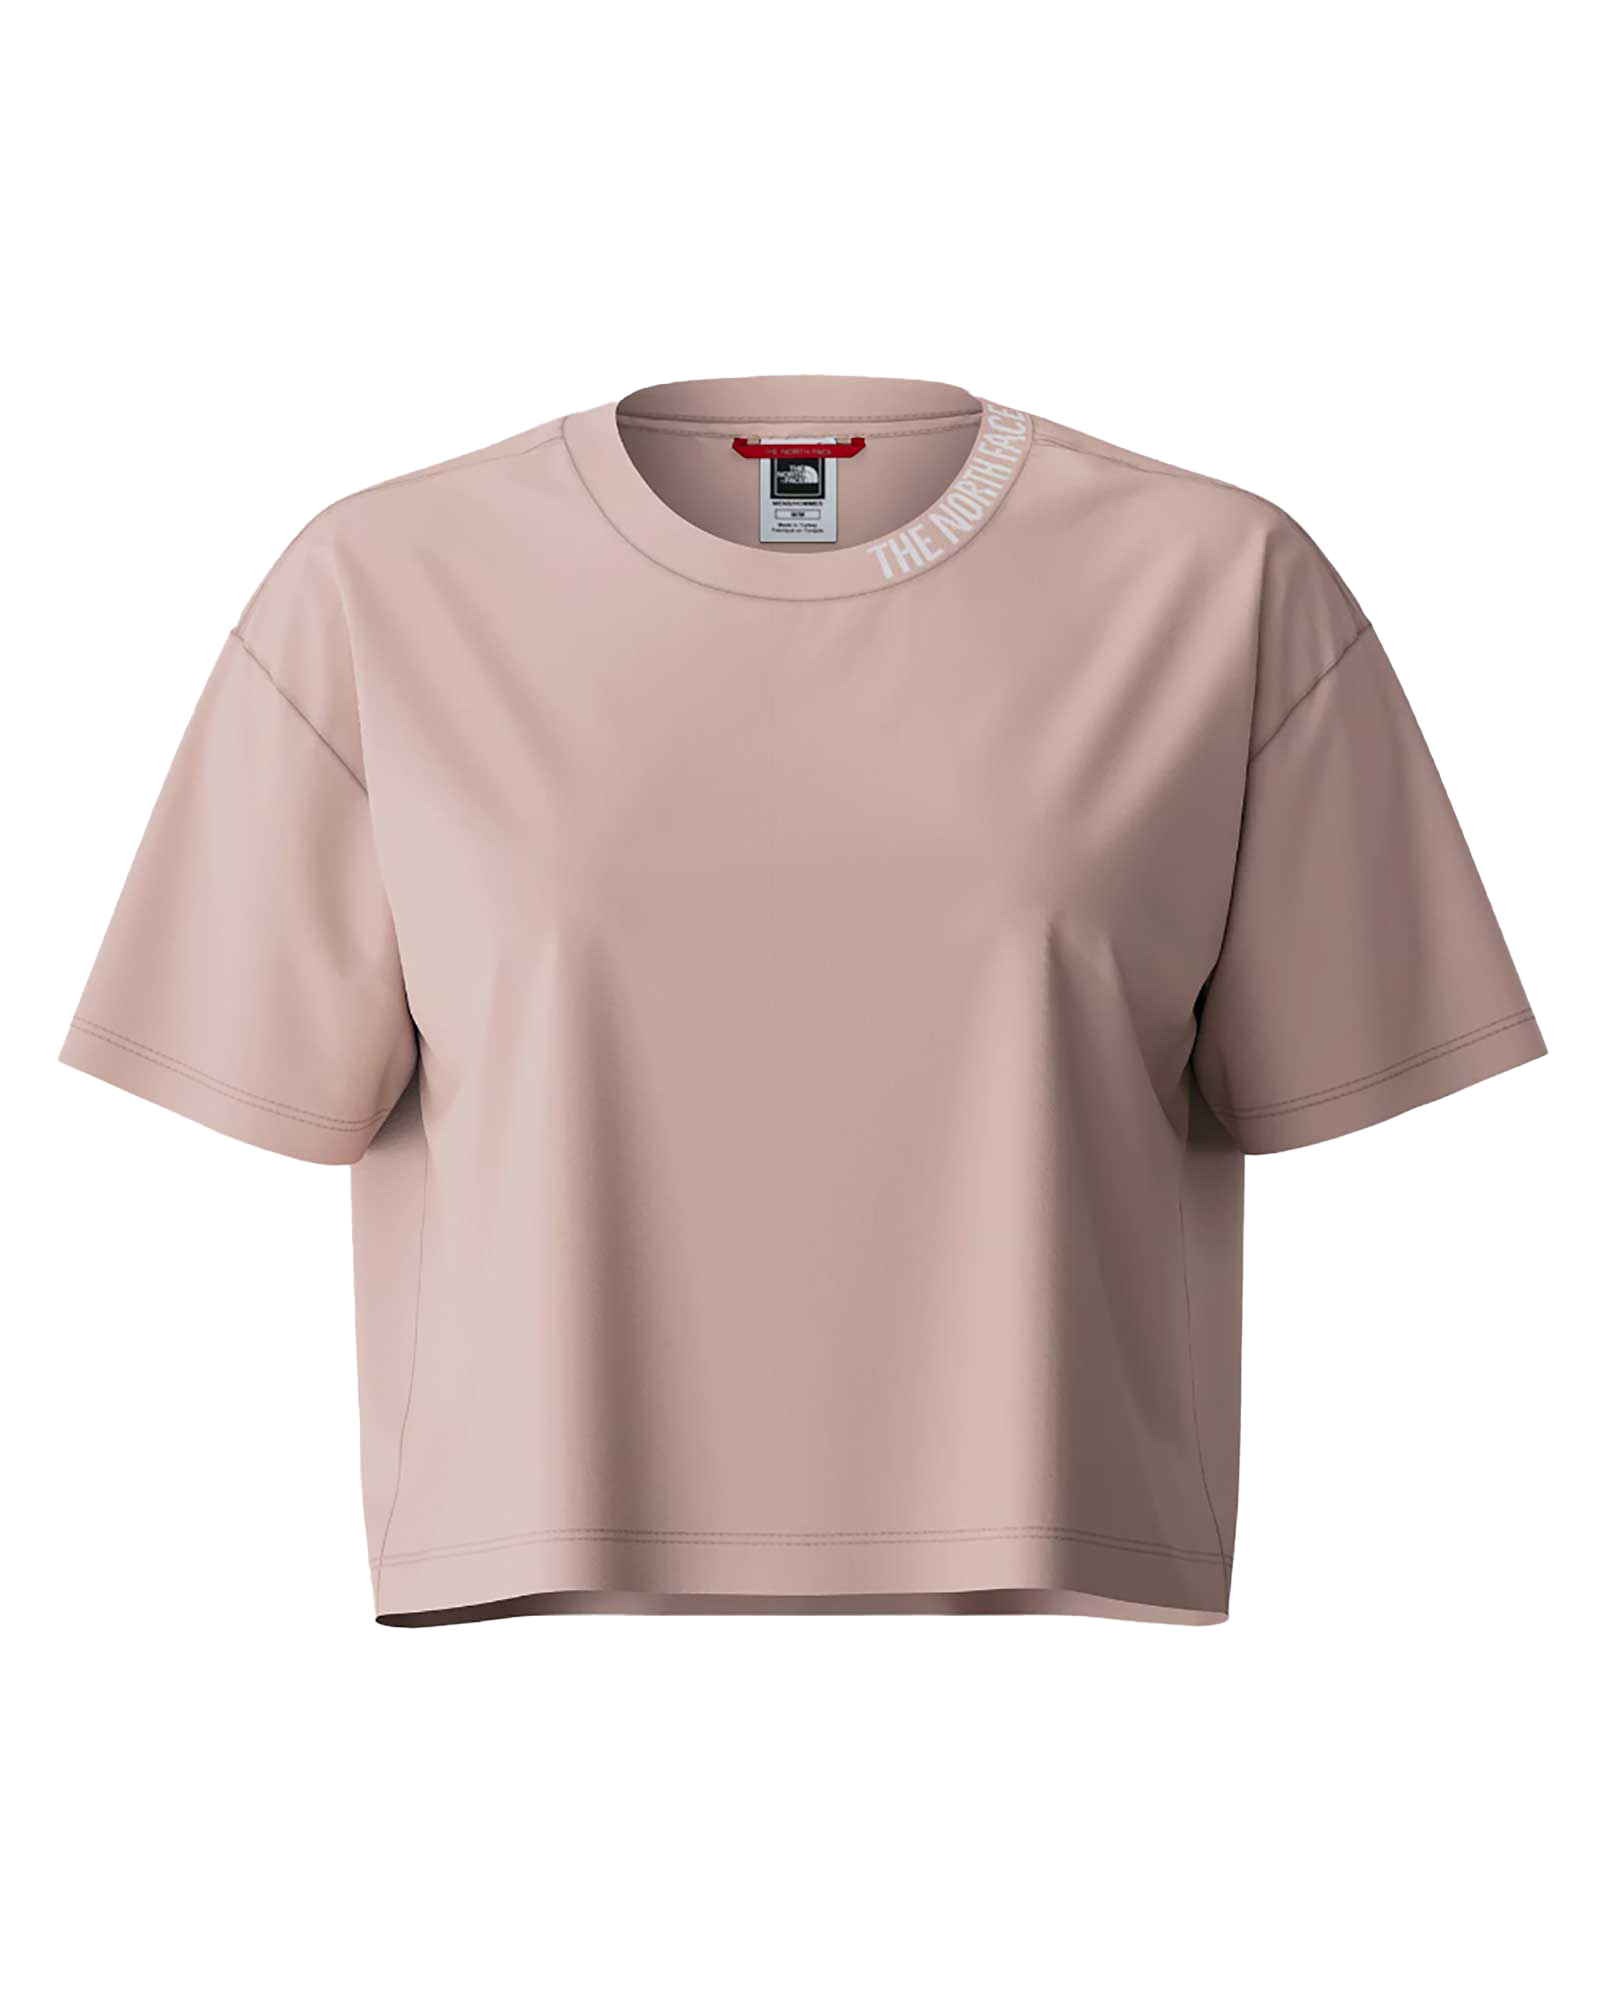 The North Face Women’s Zumu Crop T Shirt - Pink Moss S